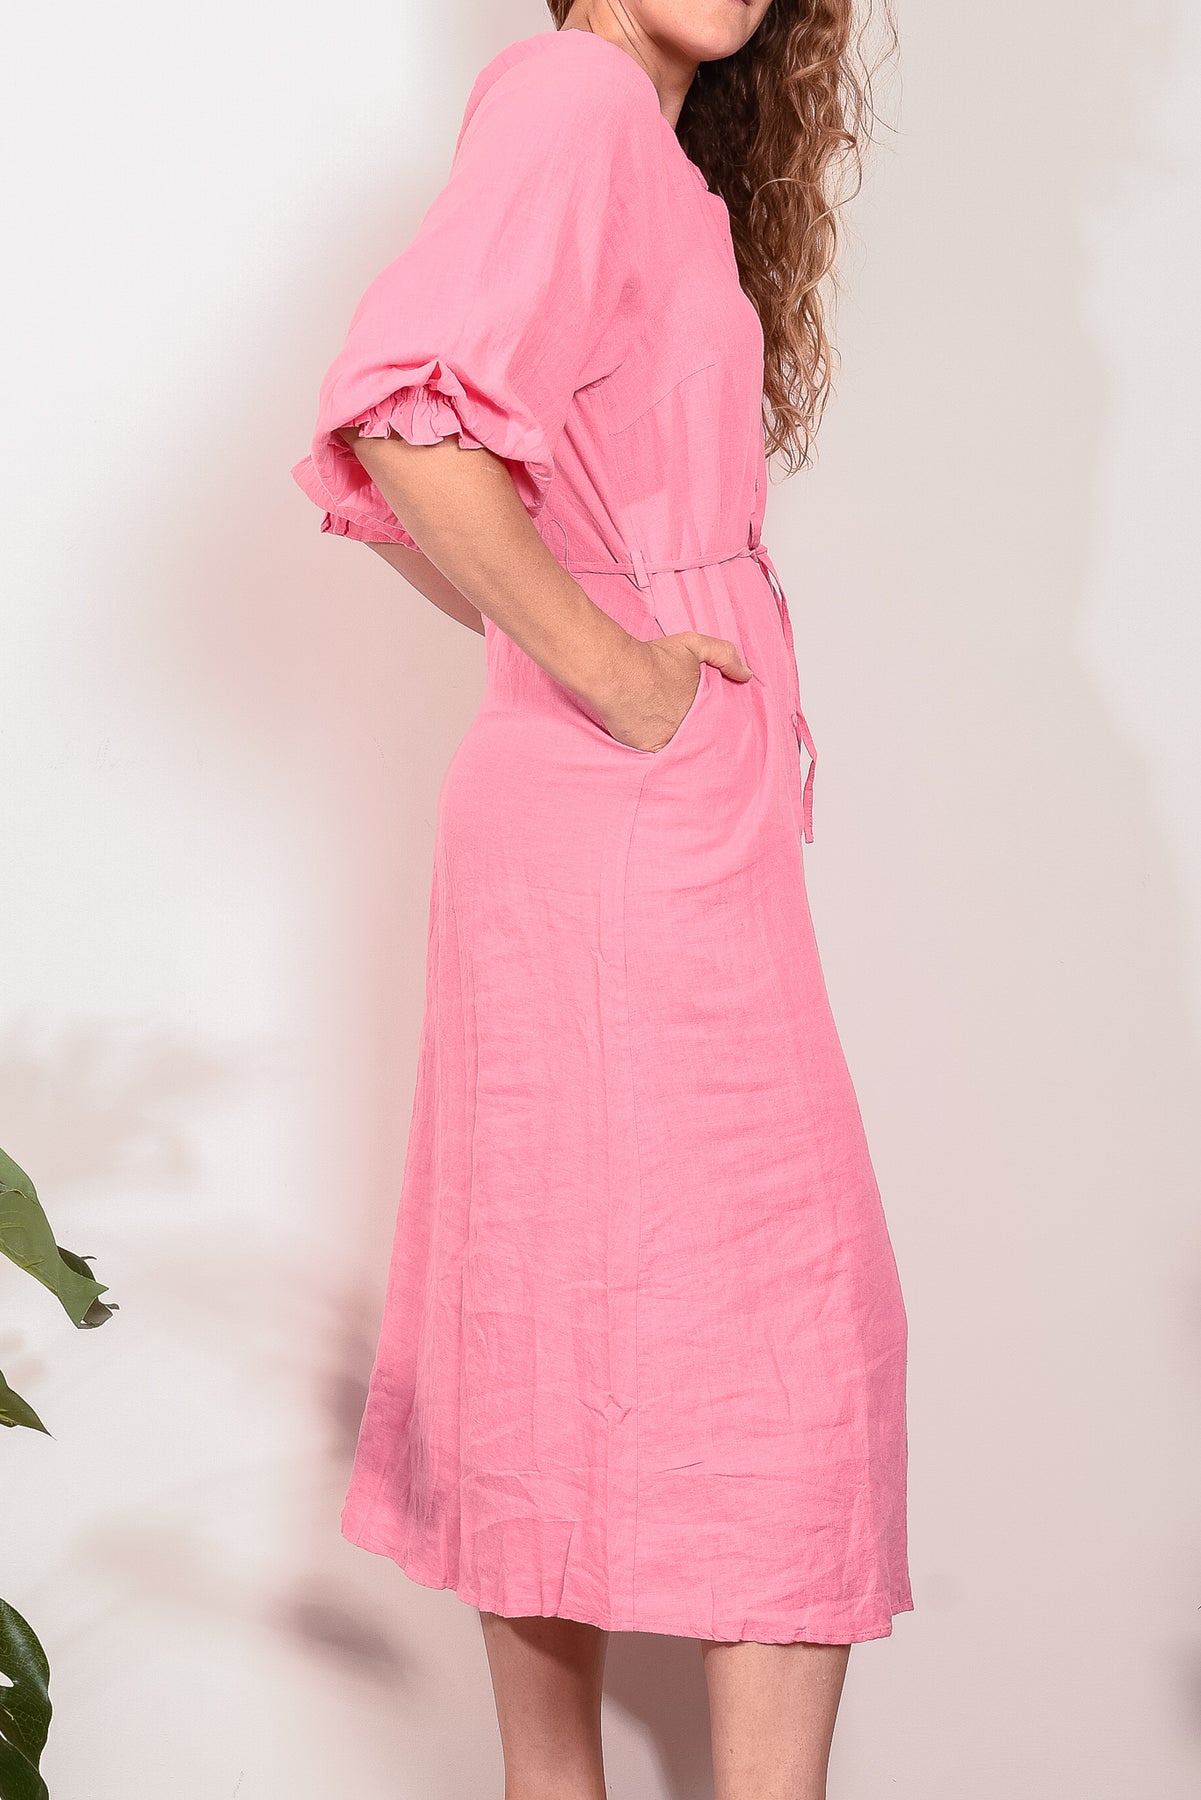 Kinney Coco Linen Dress Pink